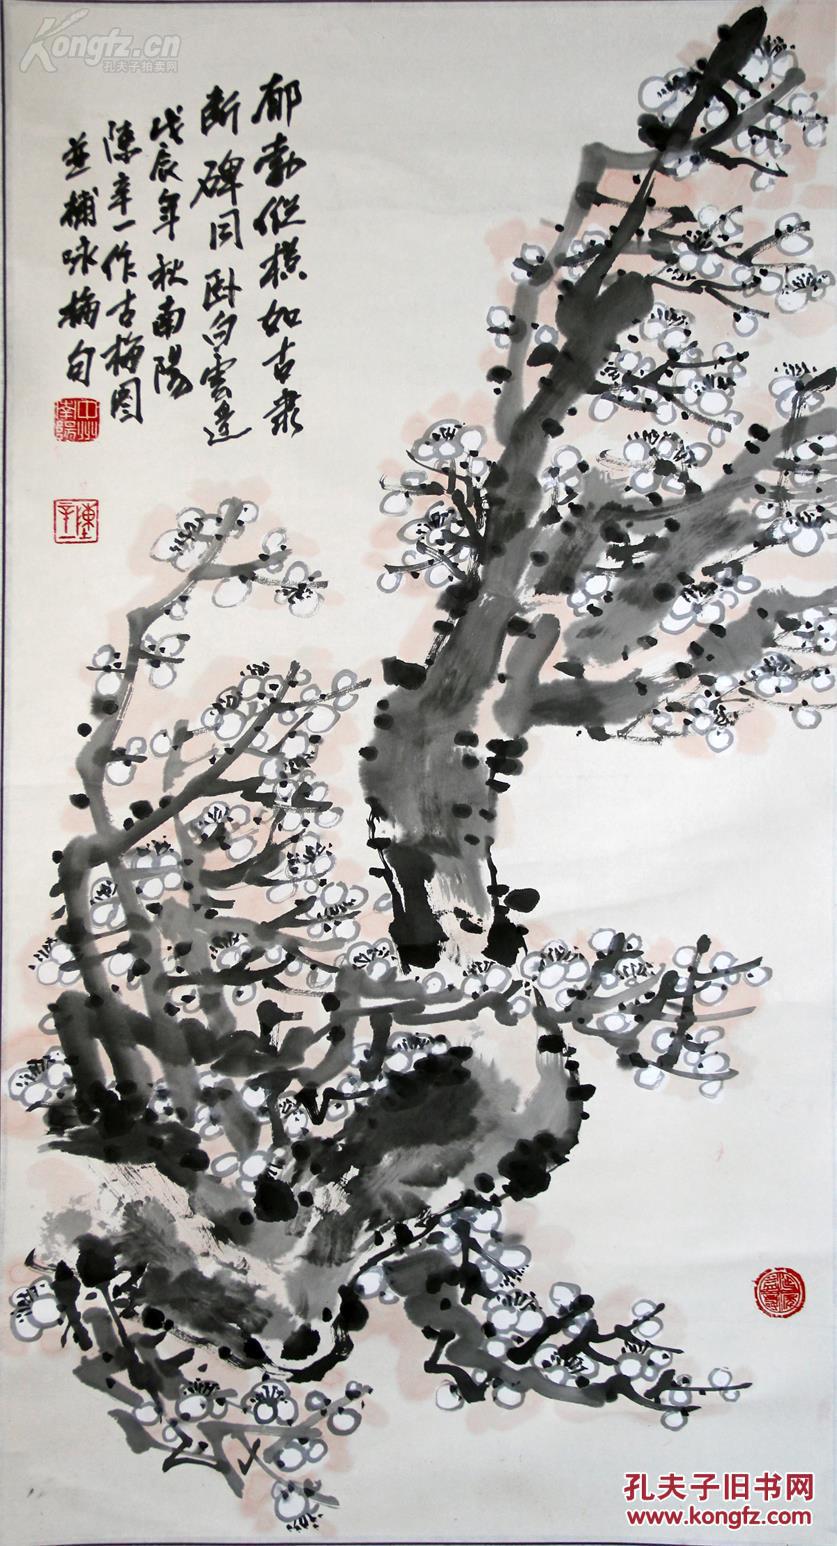 中国美术家协会会员、中国版画家协会会员、青岛国画院名誉院长、曾任大连市美协副主席陈辛一 国画作品《古梅图》